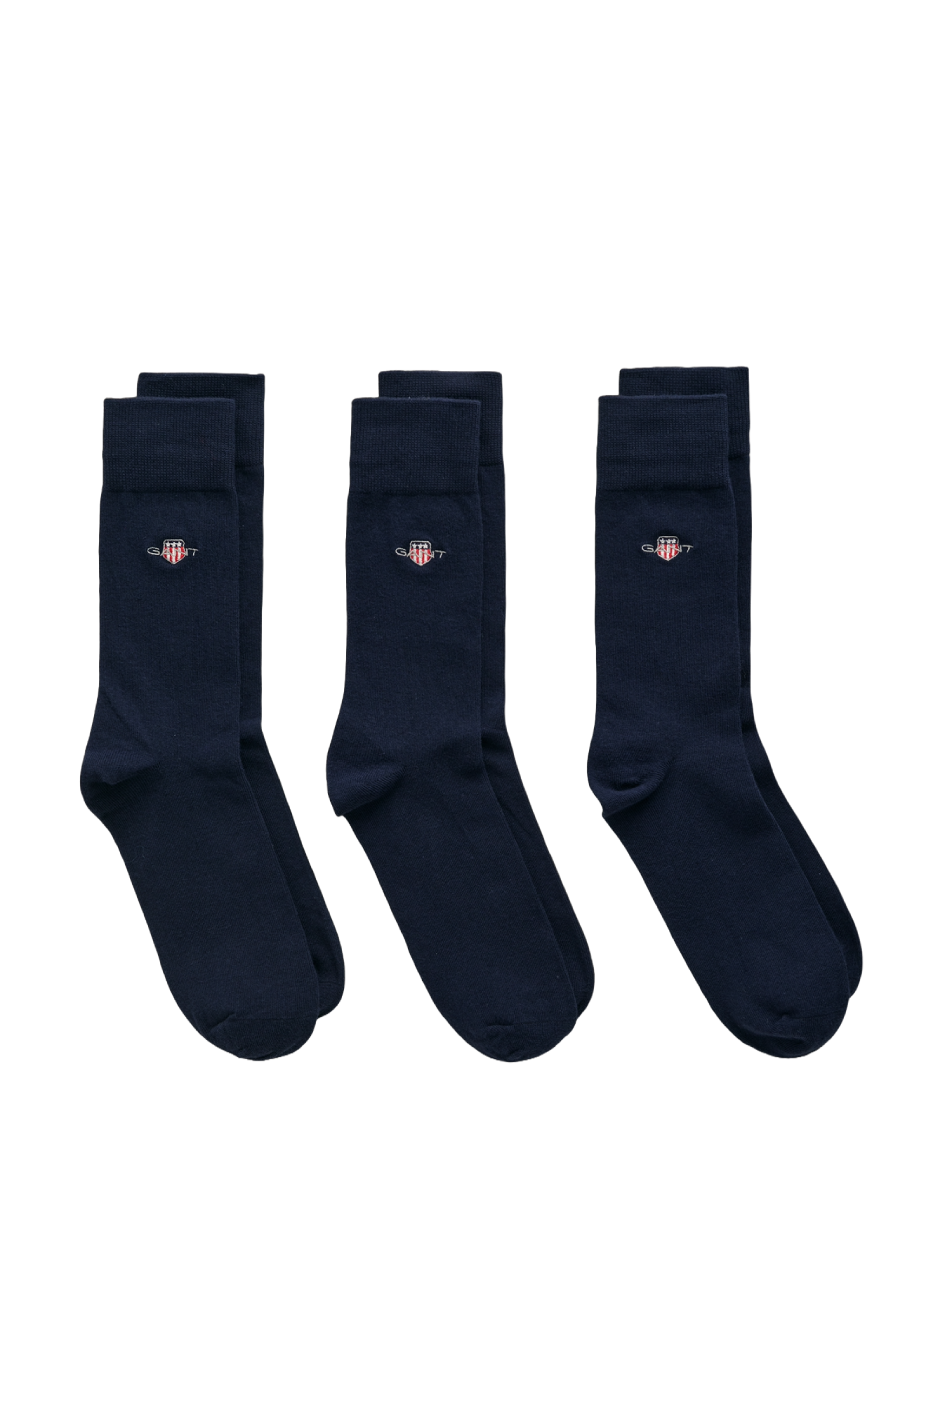 Gant 3 Pack Men's Shield Socks